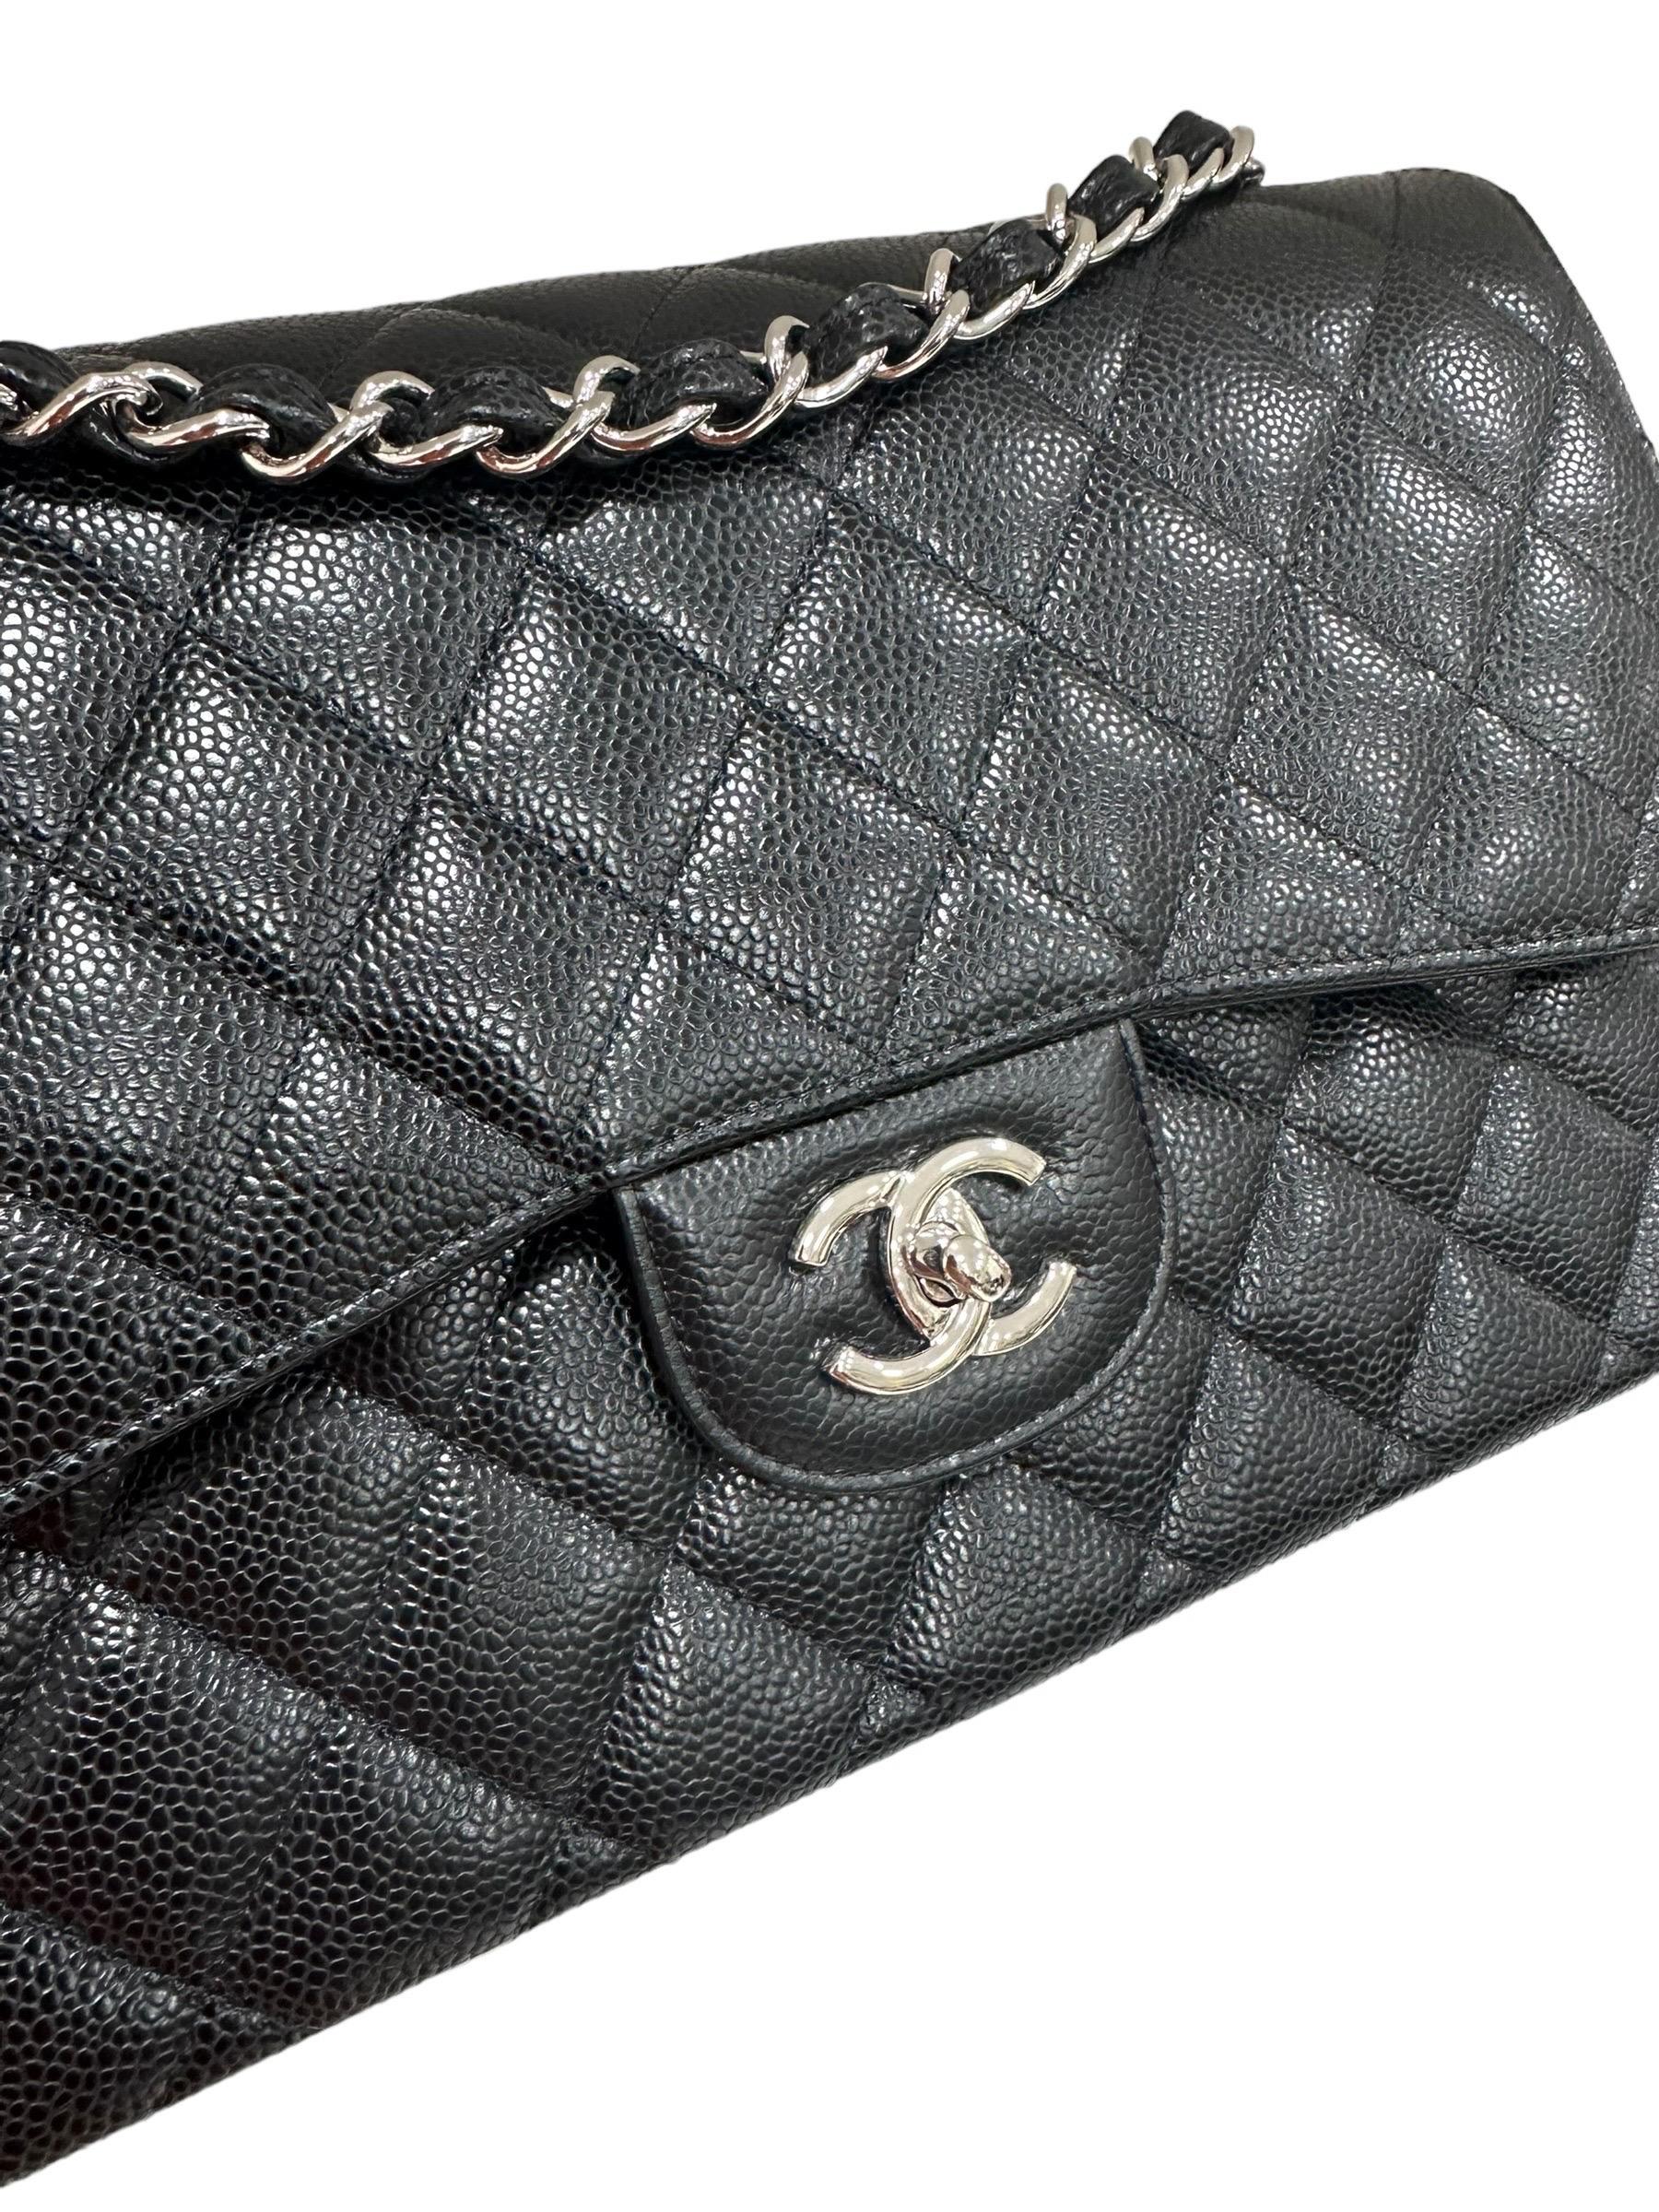 Borsa firmata Chanel, modello Timeless Jumbo, realizzata in pelle caviar nera con hardware argento. Dotata di una doppia patta, una esterna con chiusura a girello logo CC, ed una interna con chiusura a bottone. Internamente rivestita in pelle liscia